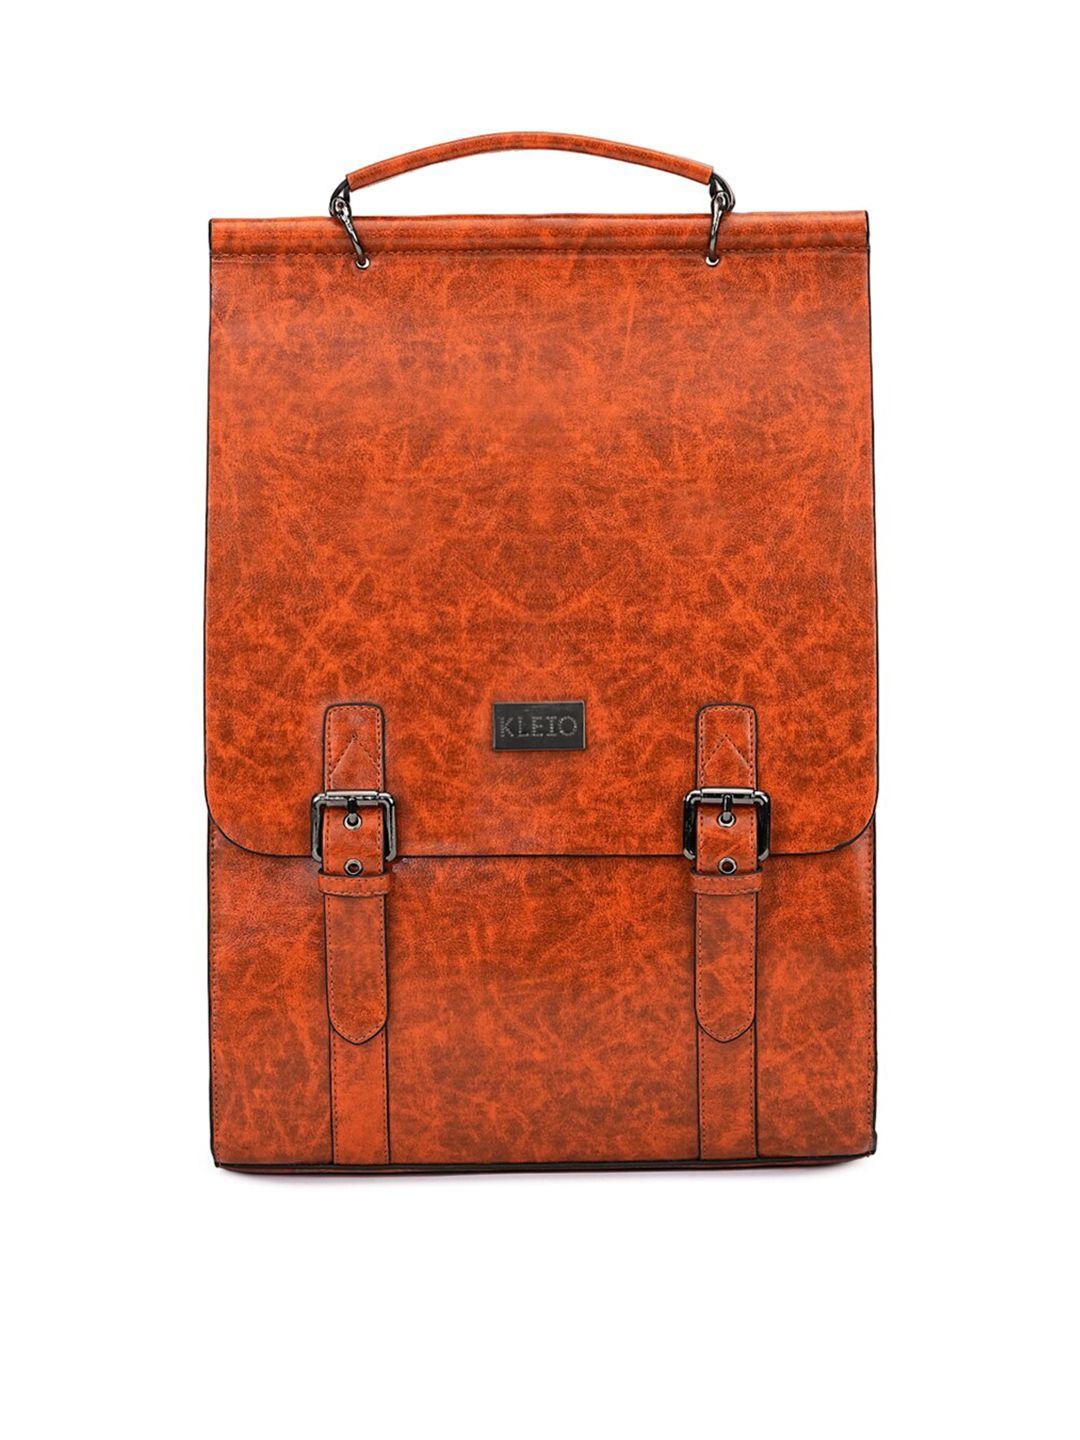 kleio unisex orange embellished backpack